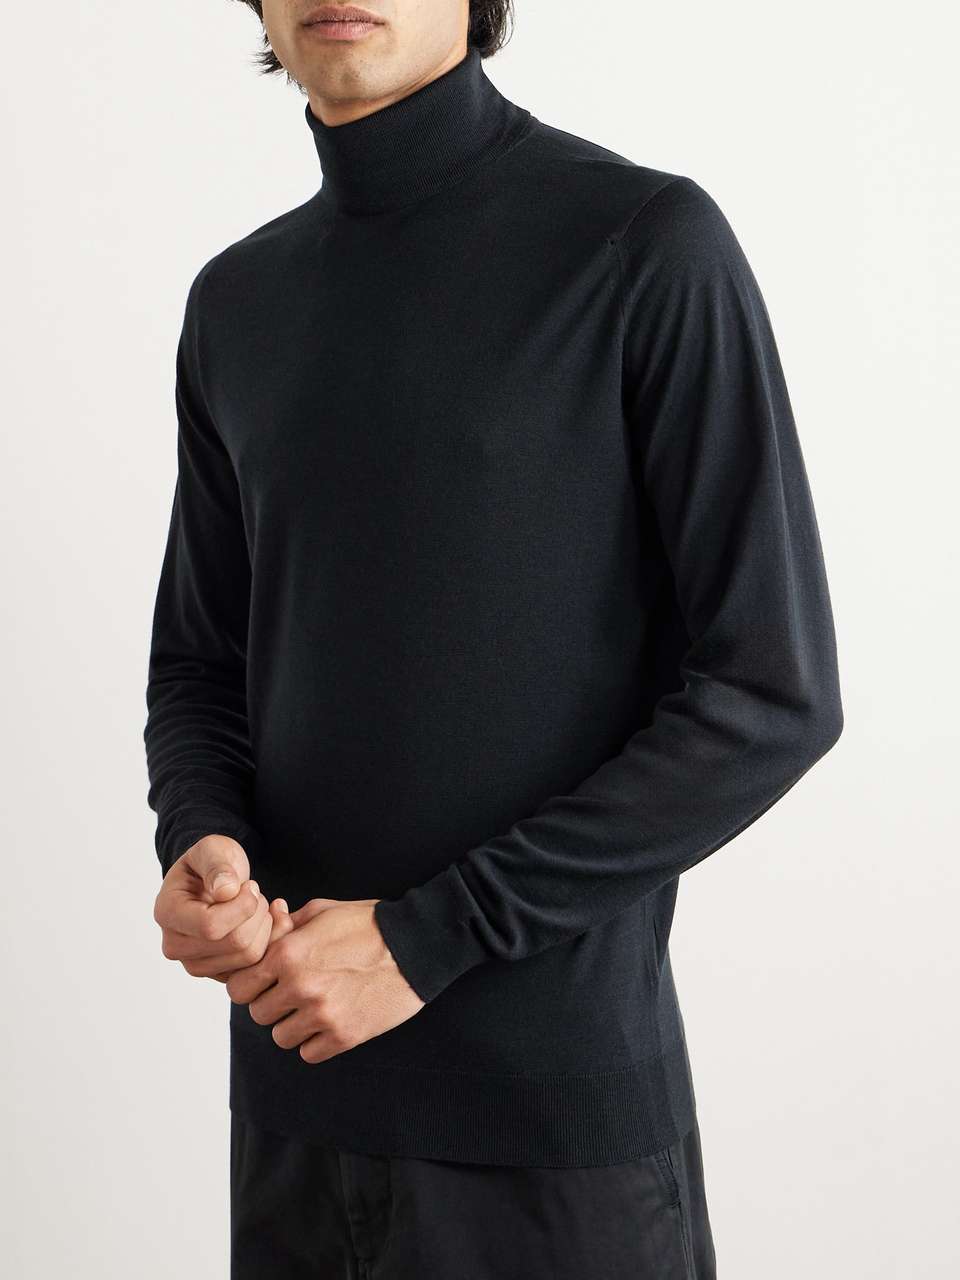 JOHN SMEDLEY Cherwell Merino Wool Rollneck Sweater for Men | MR PORTER